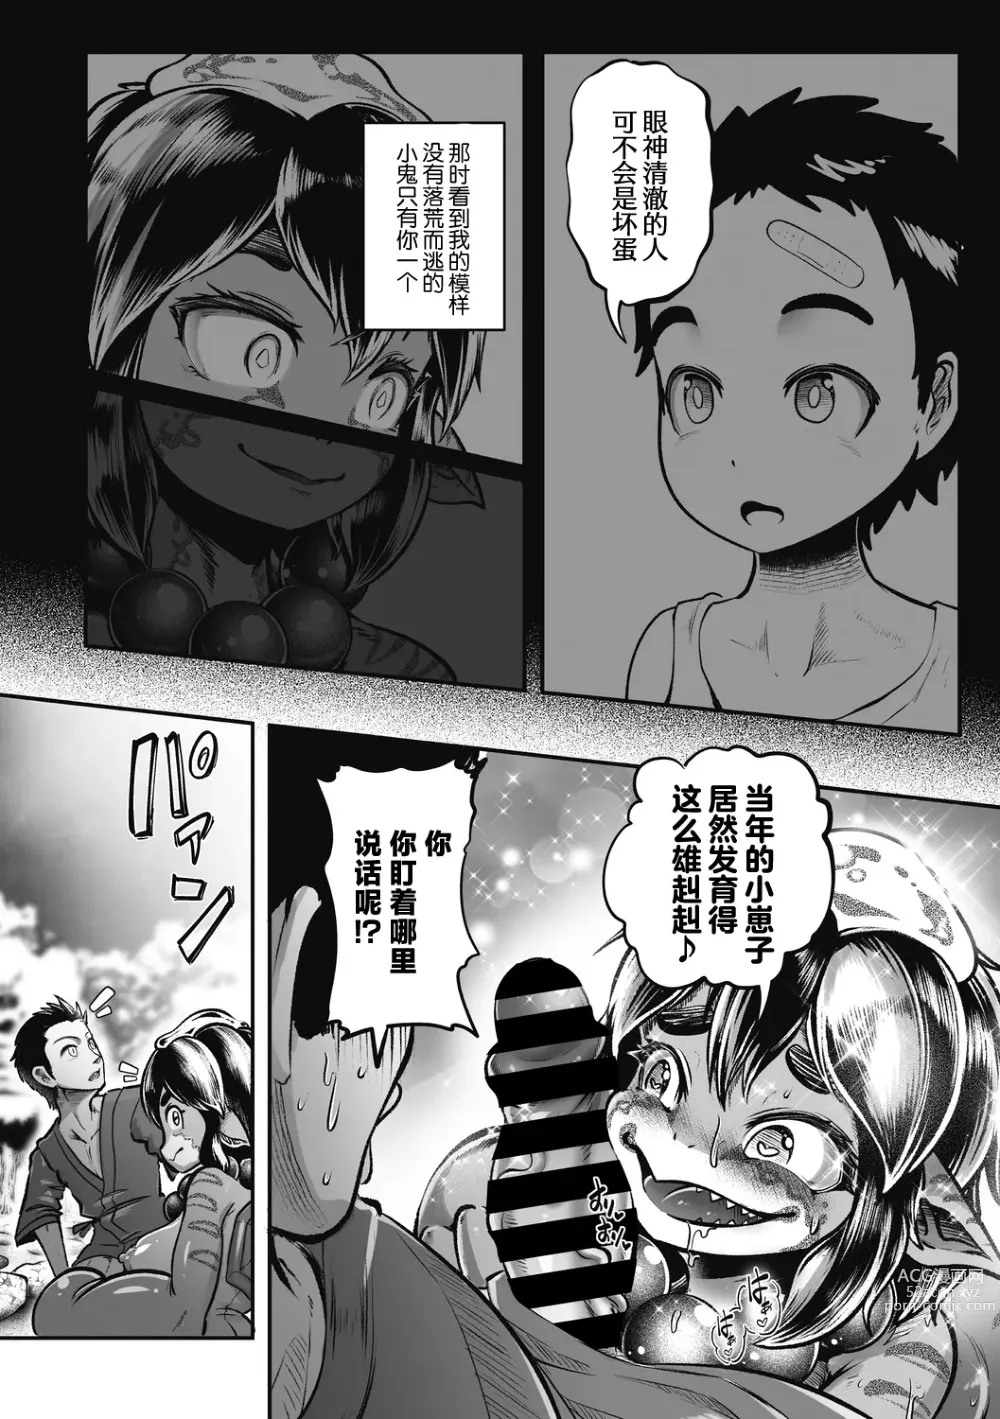 Page 7 of manga Natsu to Ame Tokidoki Uchiage Hanabi